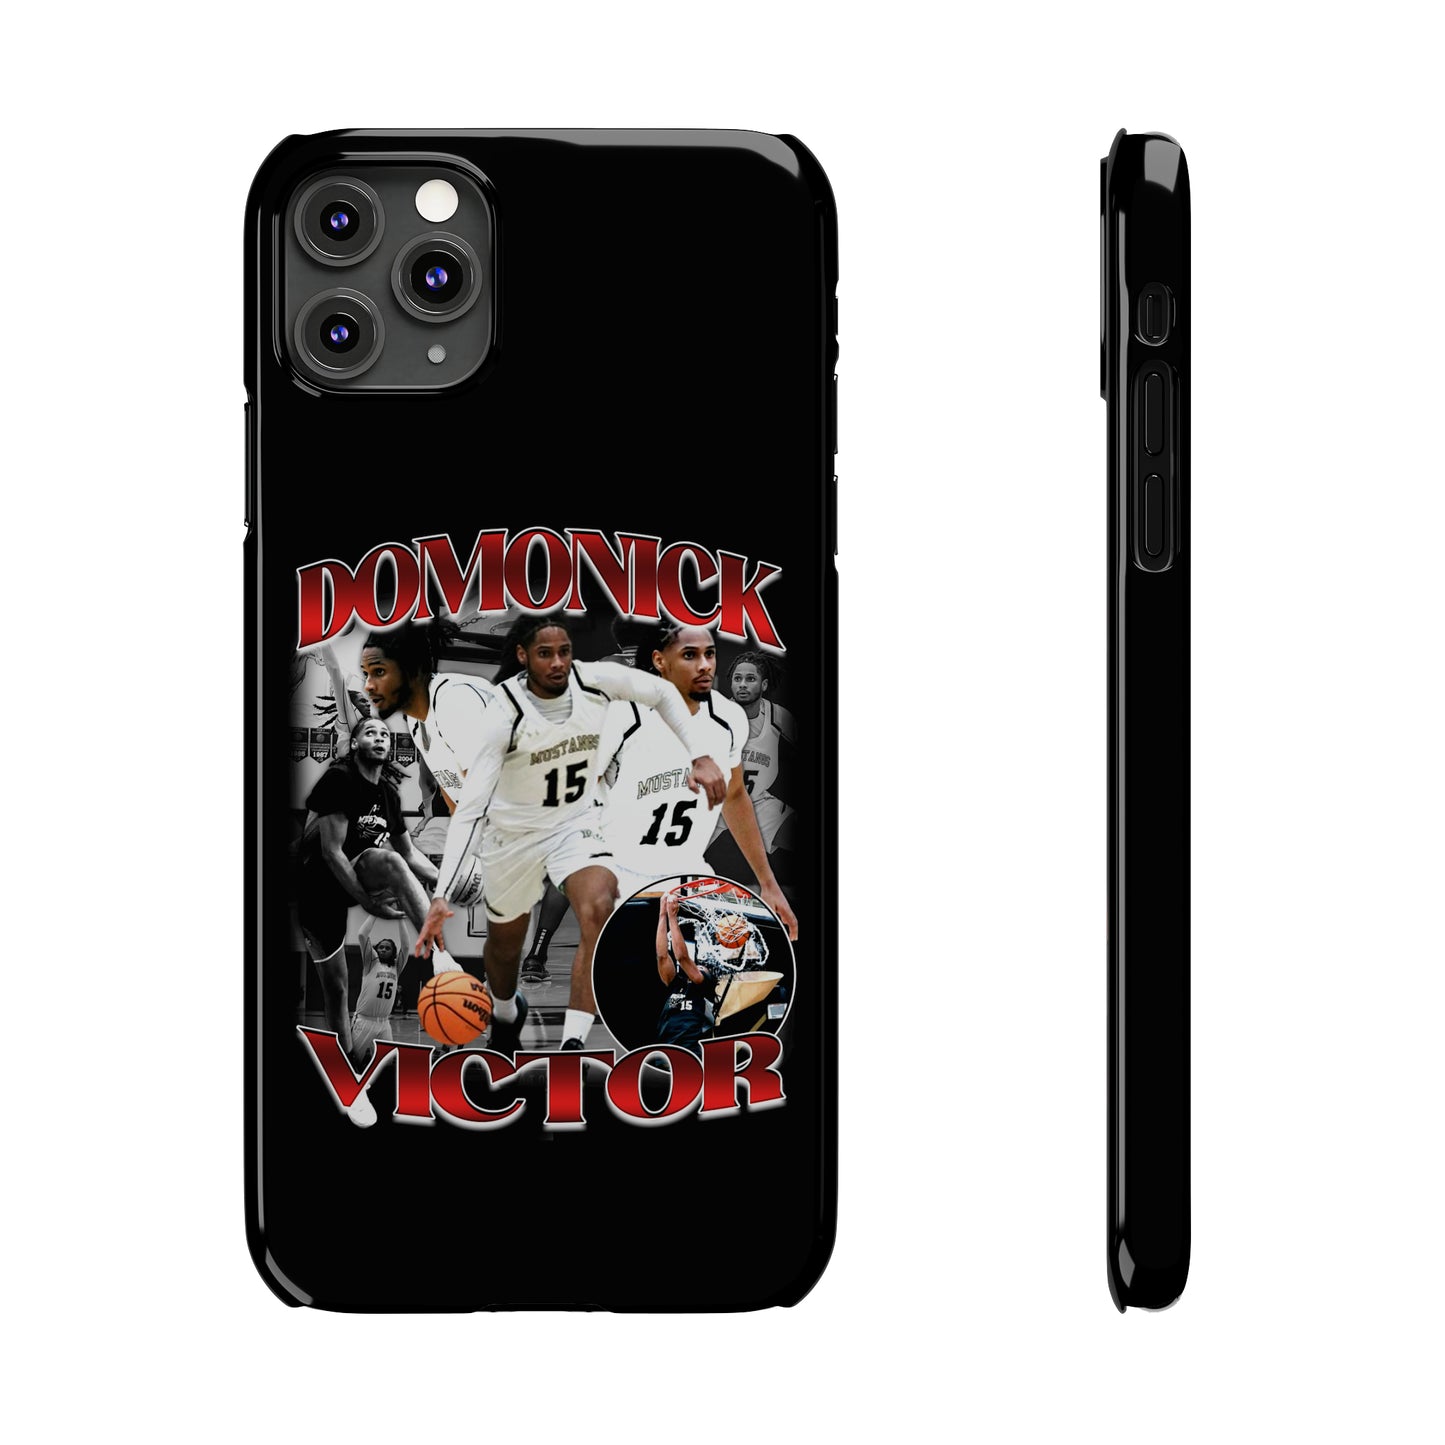 Domonick Victor Phone Case